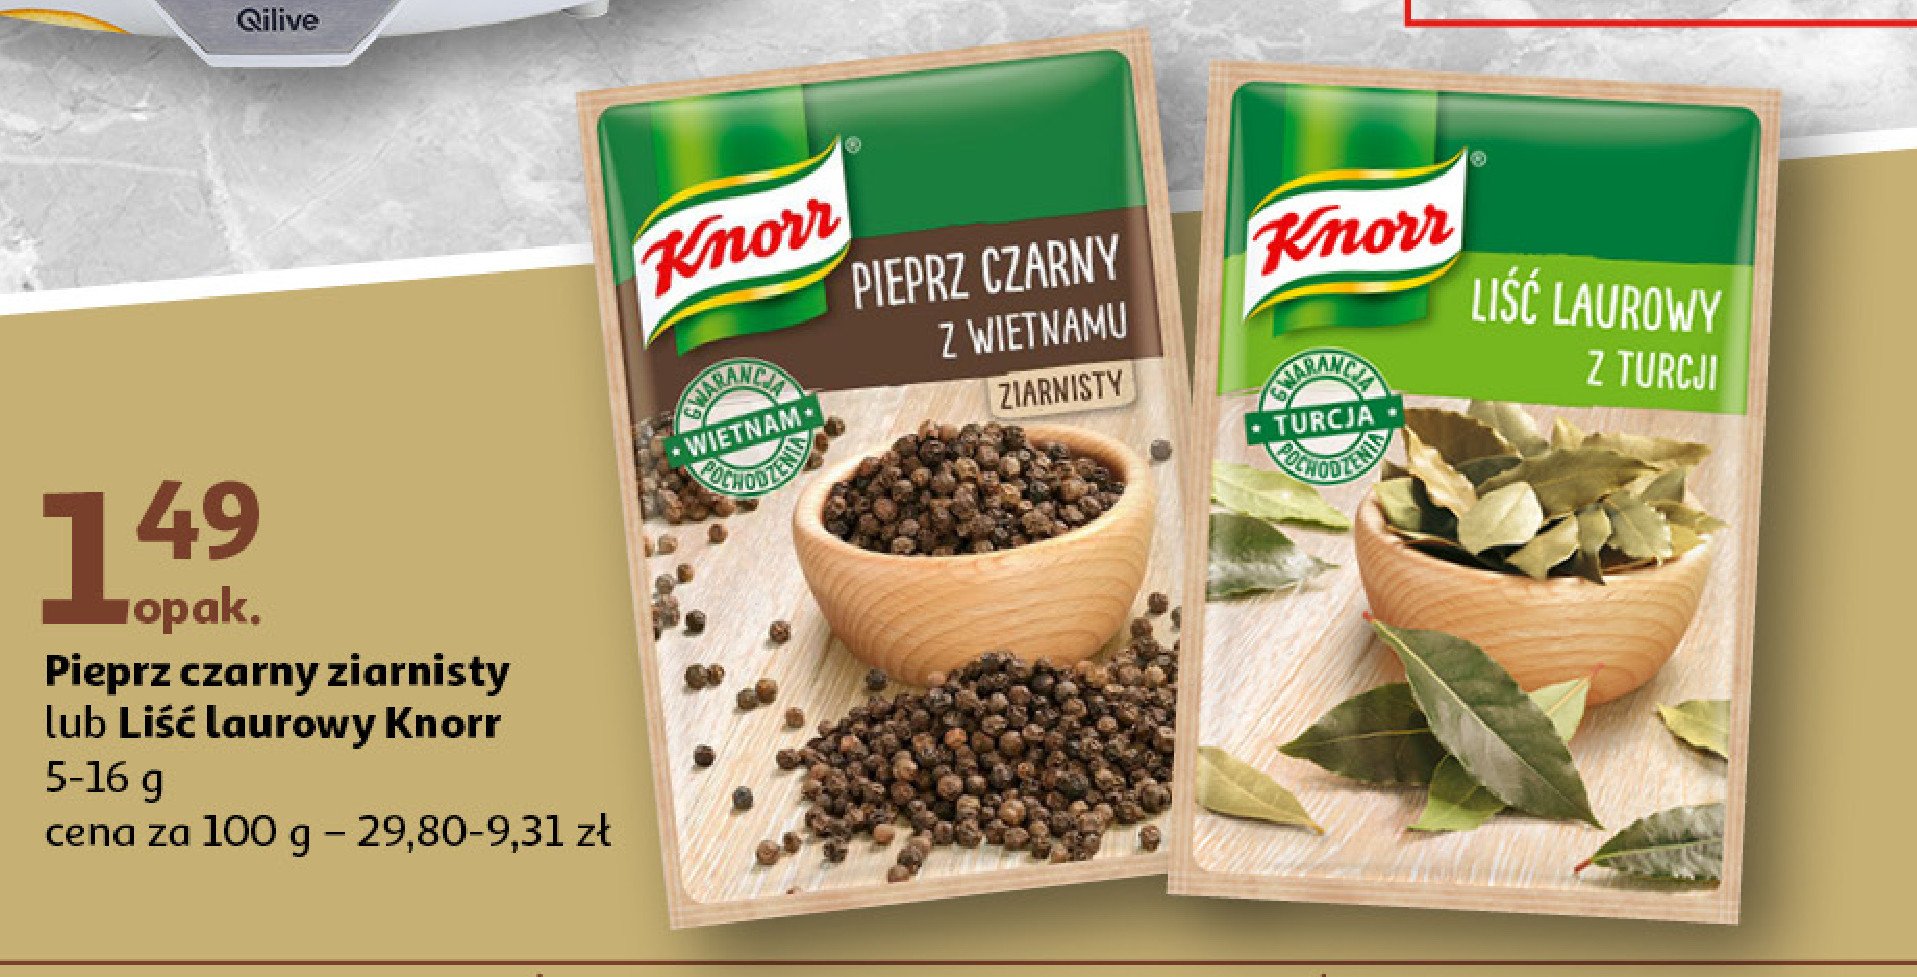 Liść laurowy z turcji Knorr promocja